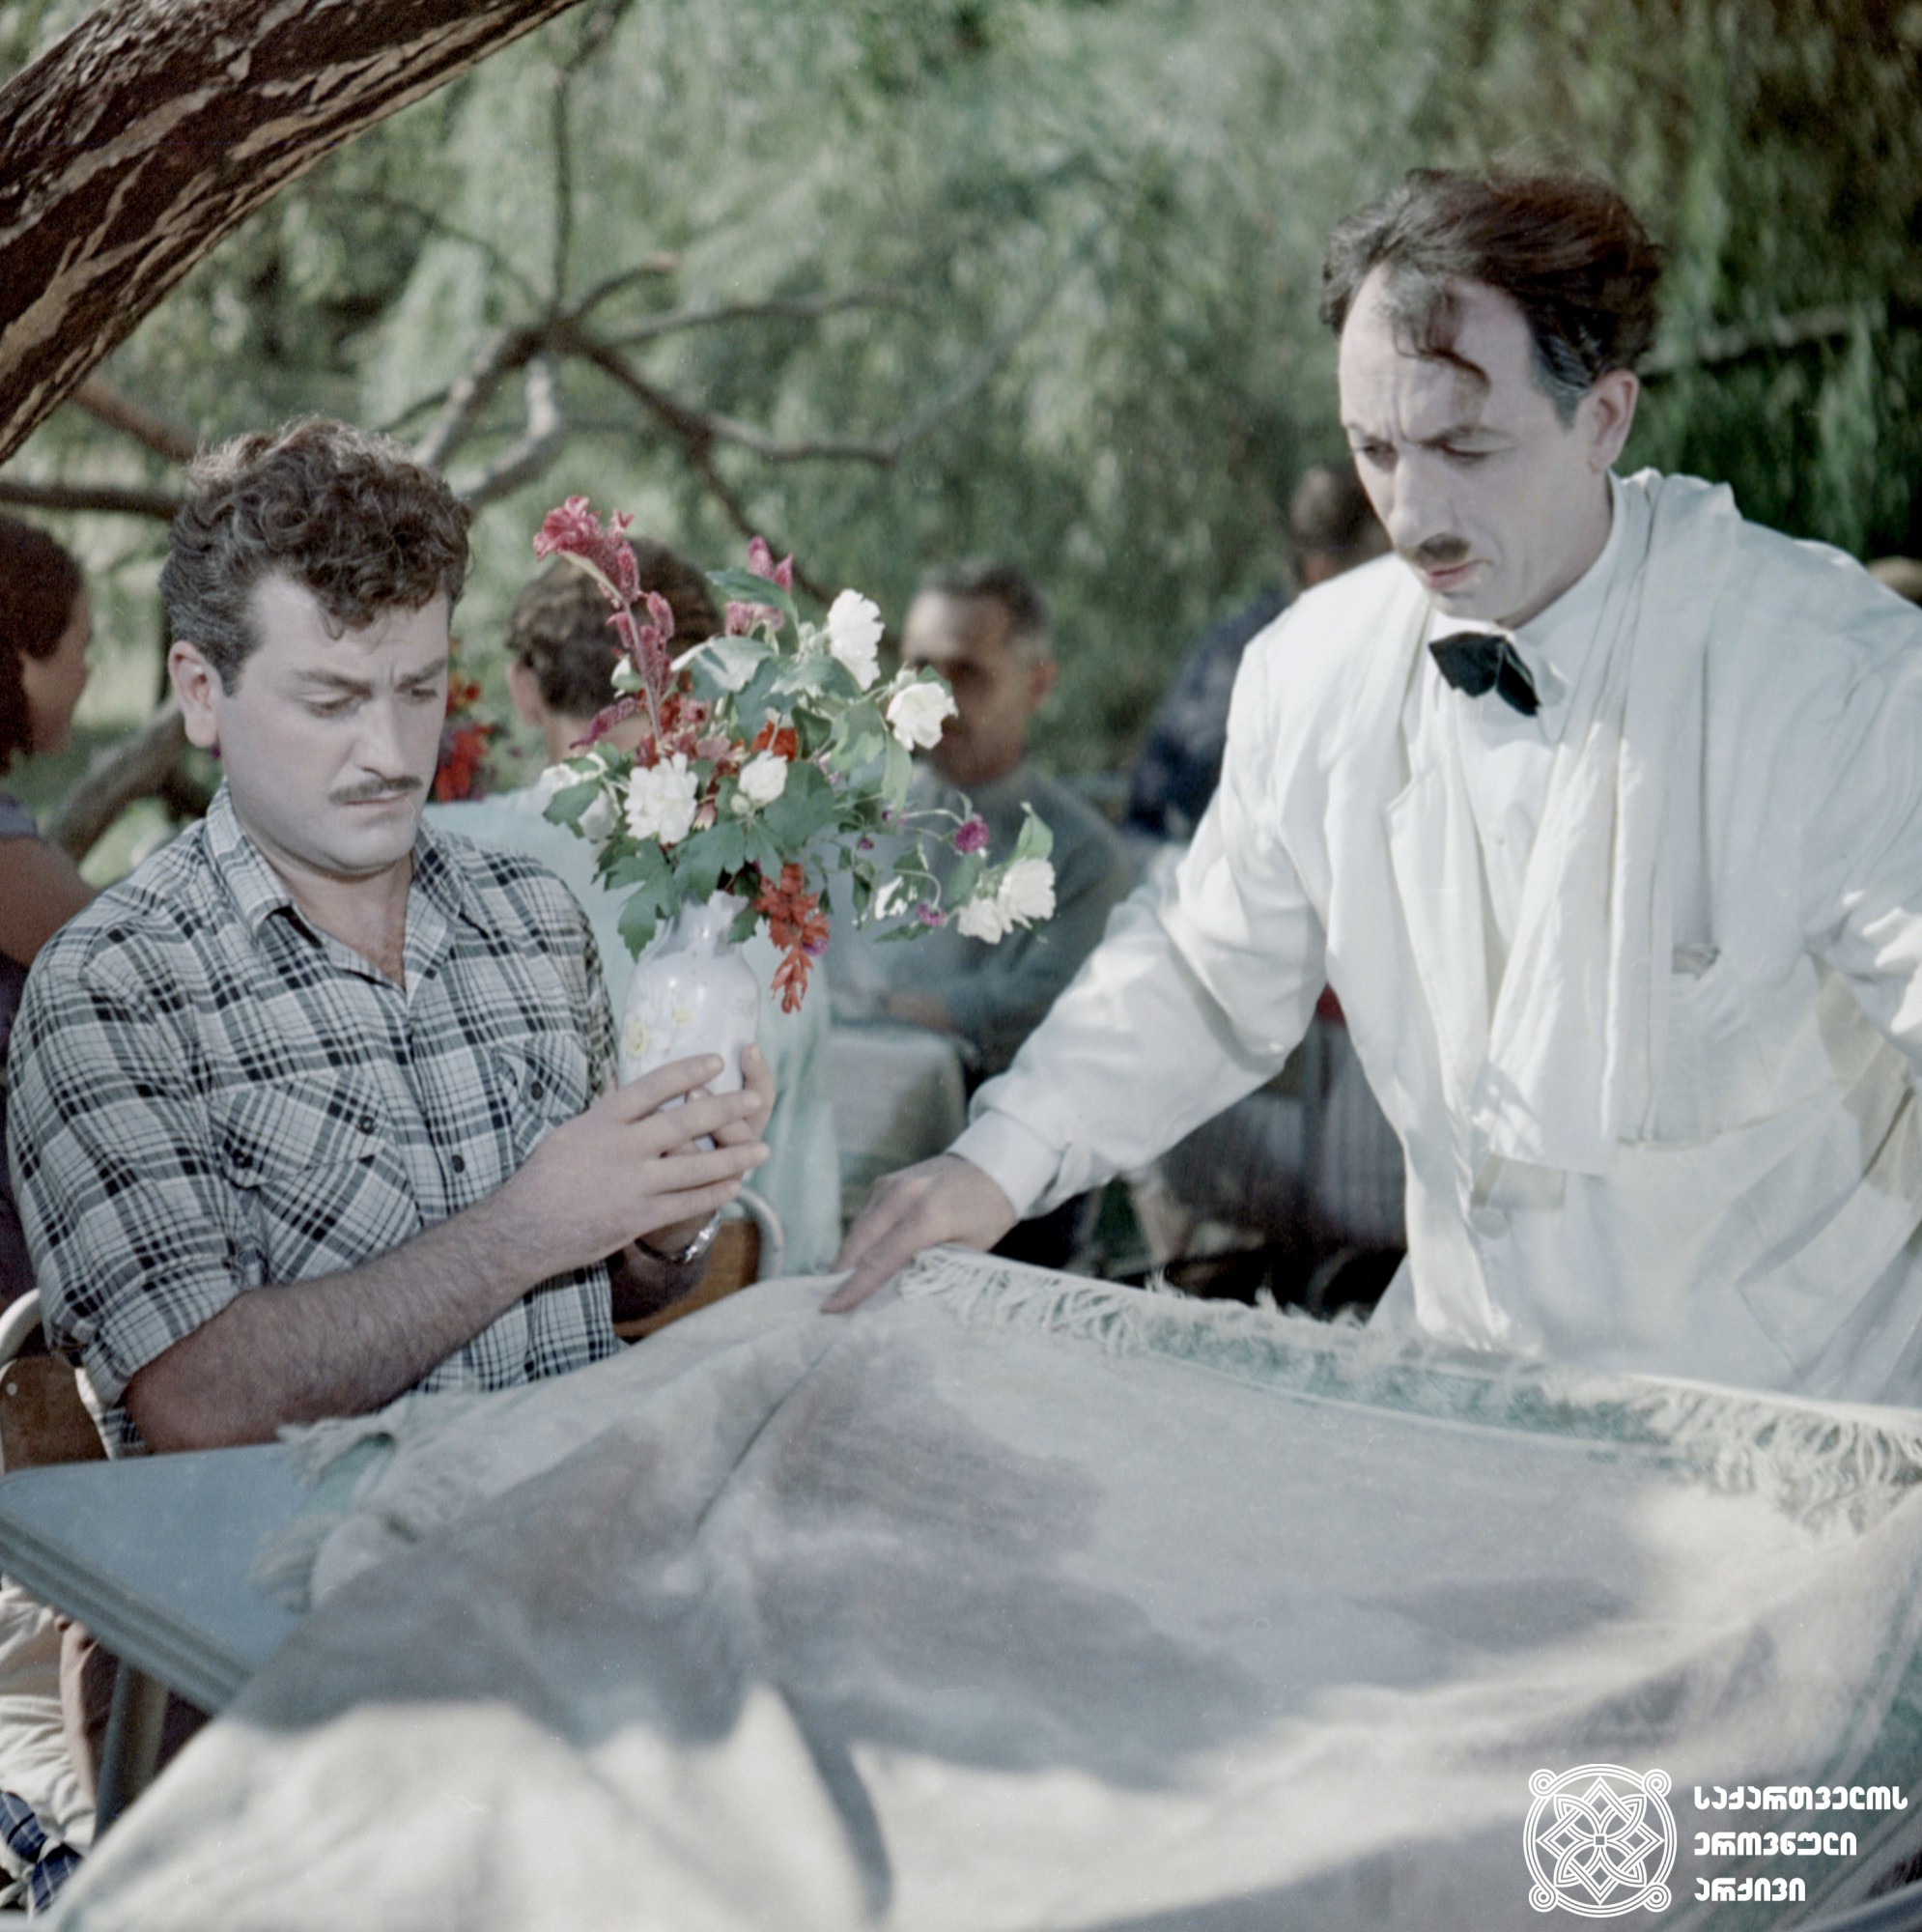 მხატვრული ფილმი „წარსული  ზაფხული“. კინორეჟისორი - რამაზ ჩხიკვაძე. ბესარიონი - გოგი გეგეჭკორი. <br> 1959 წელი. <br>
Scene from the film Last Summer. Ramaz Chkhikvadze as the Film
Director, Gogi Gegechkori as Besarion. <br>
1959.